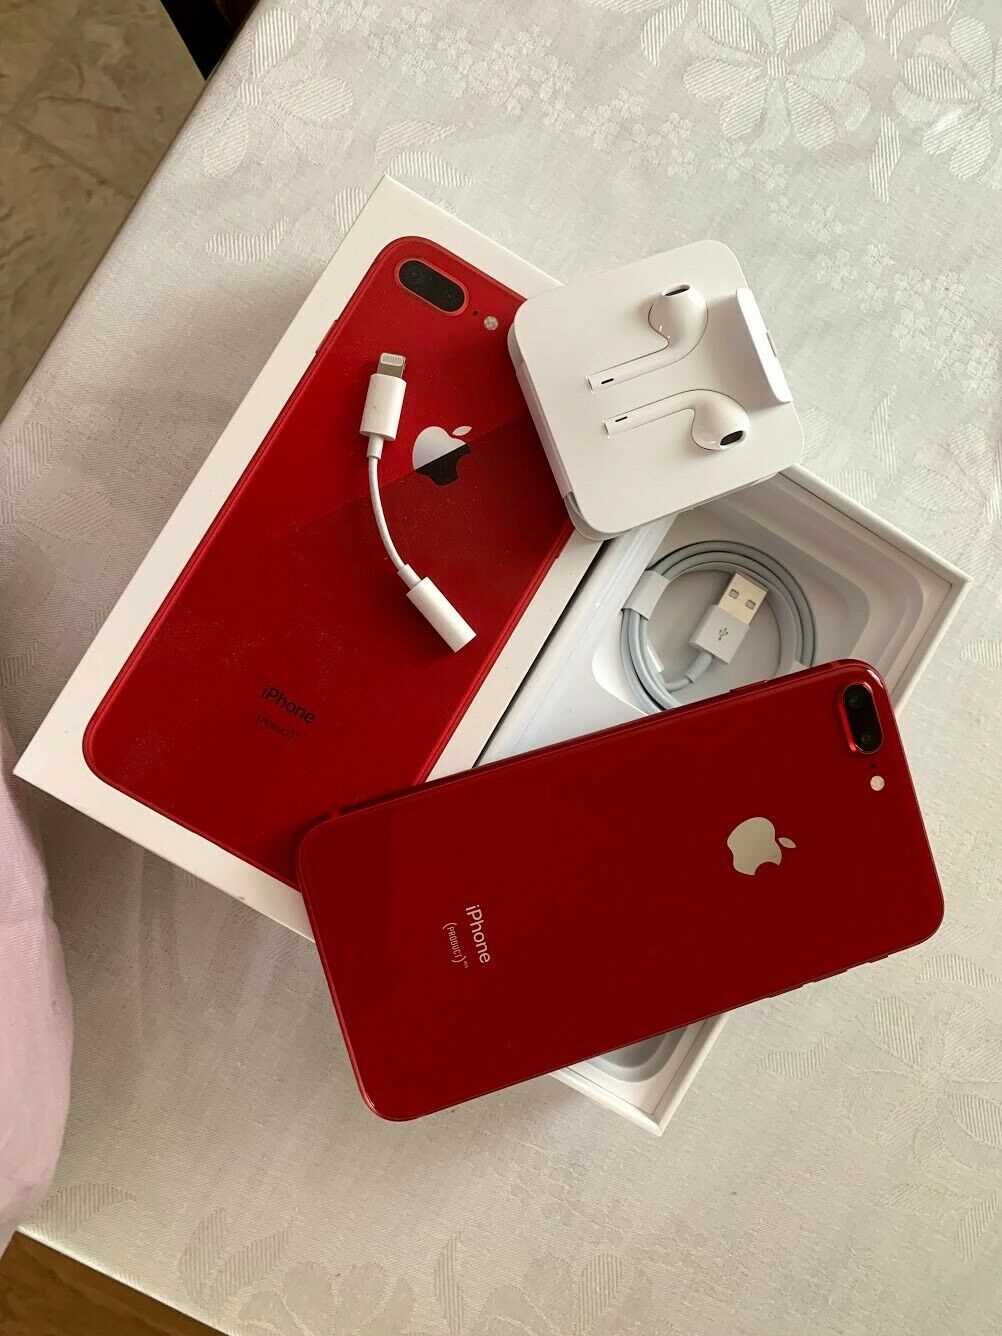 Apple Iphone 8plus Red 256Gb 